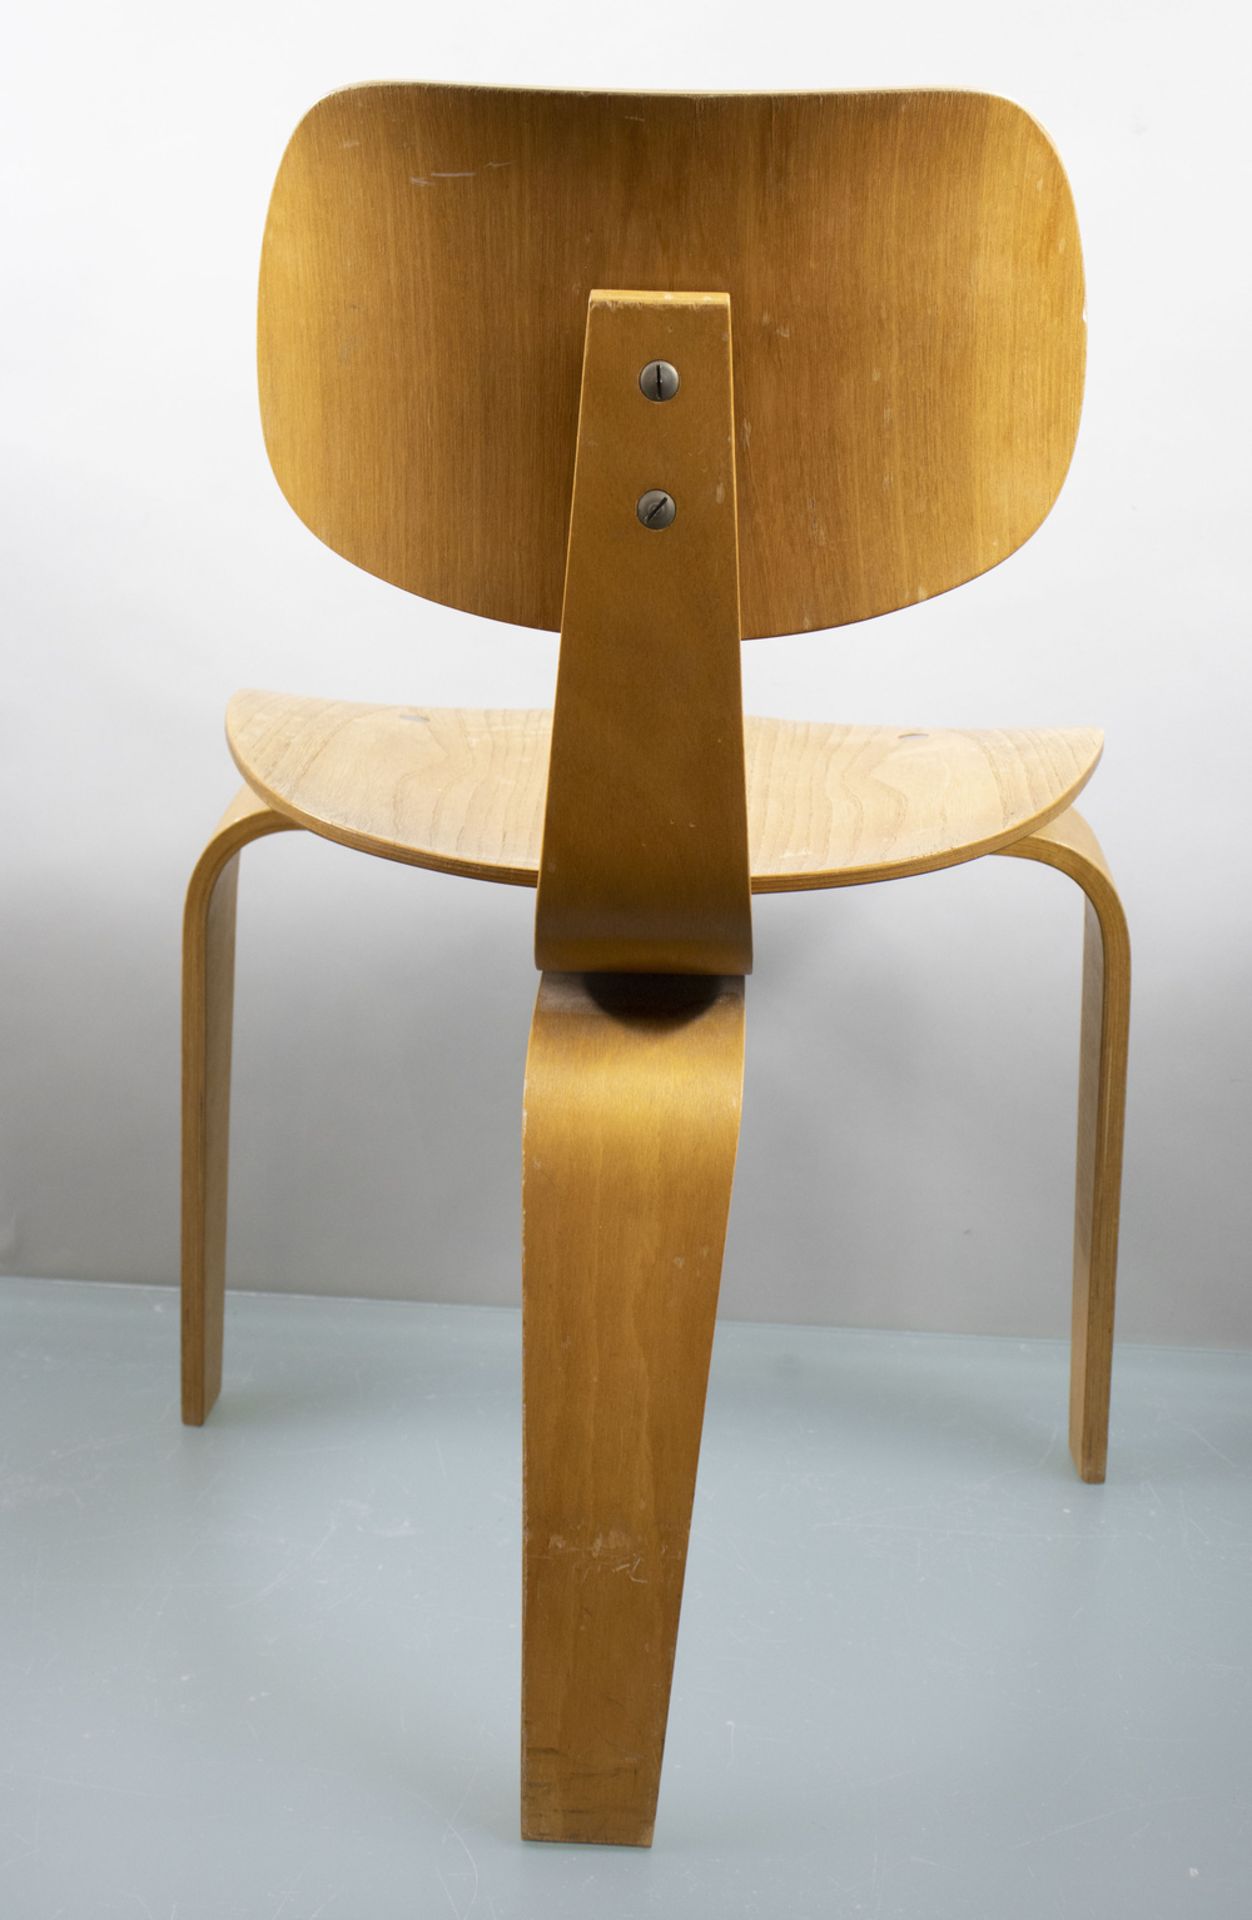 Dreibein-Stuhl / A tripod chair, Egon Eiermann und Wilde & Spieth, nach 1949 - Image 4 of 10